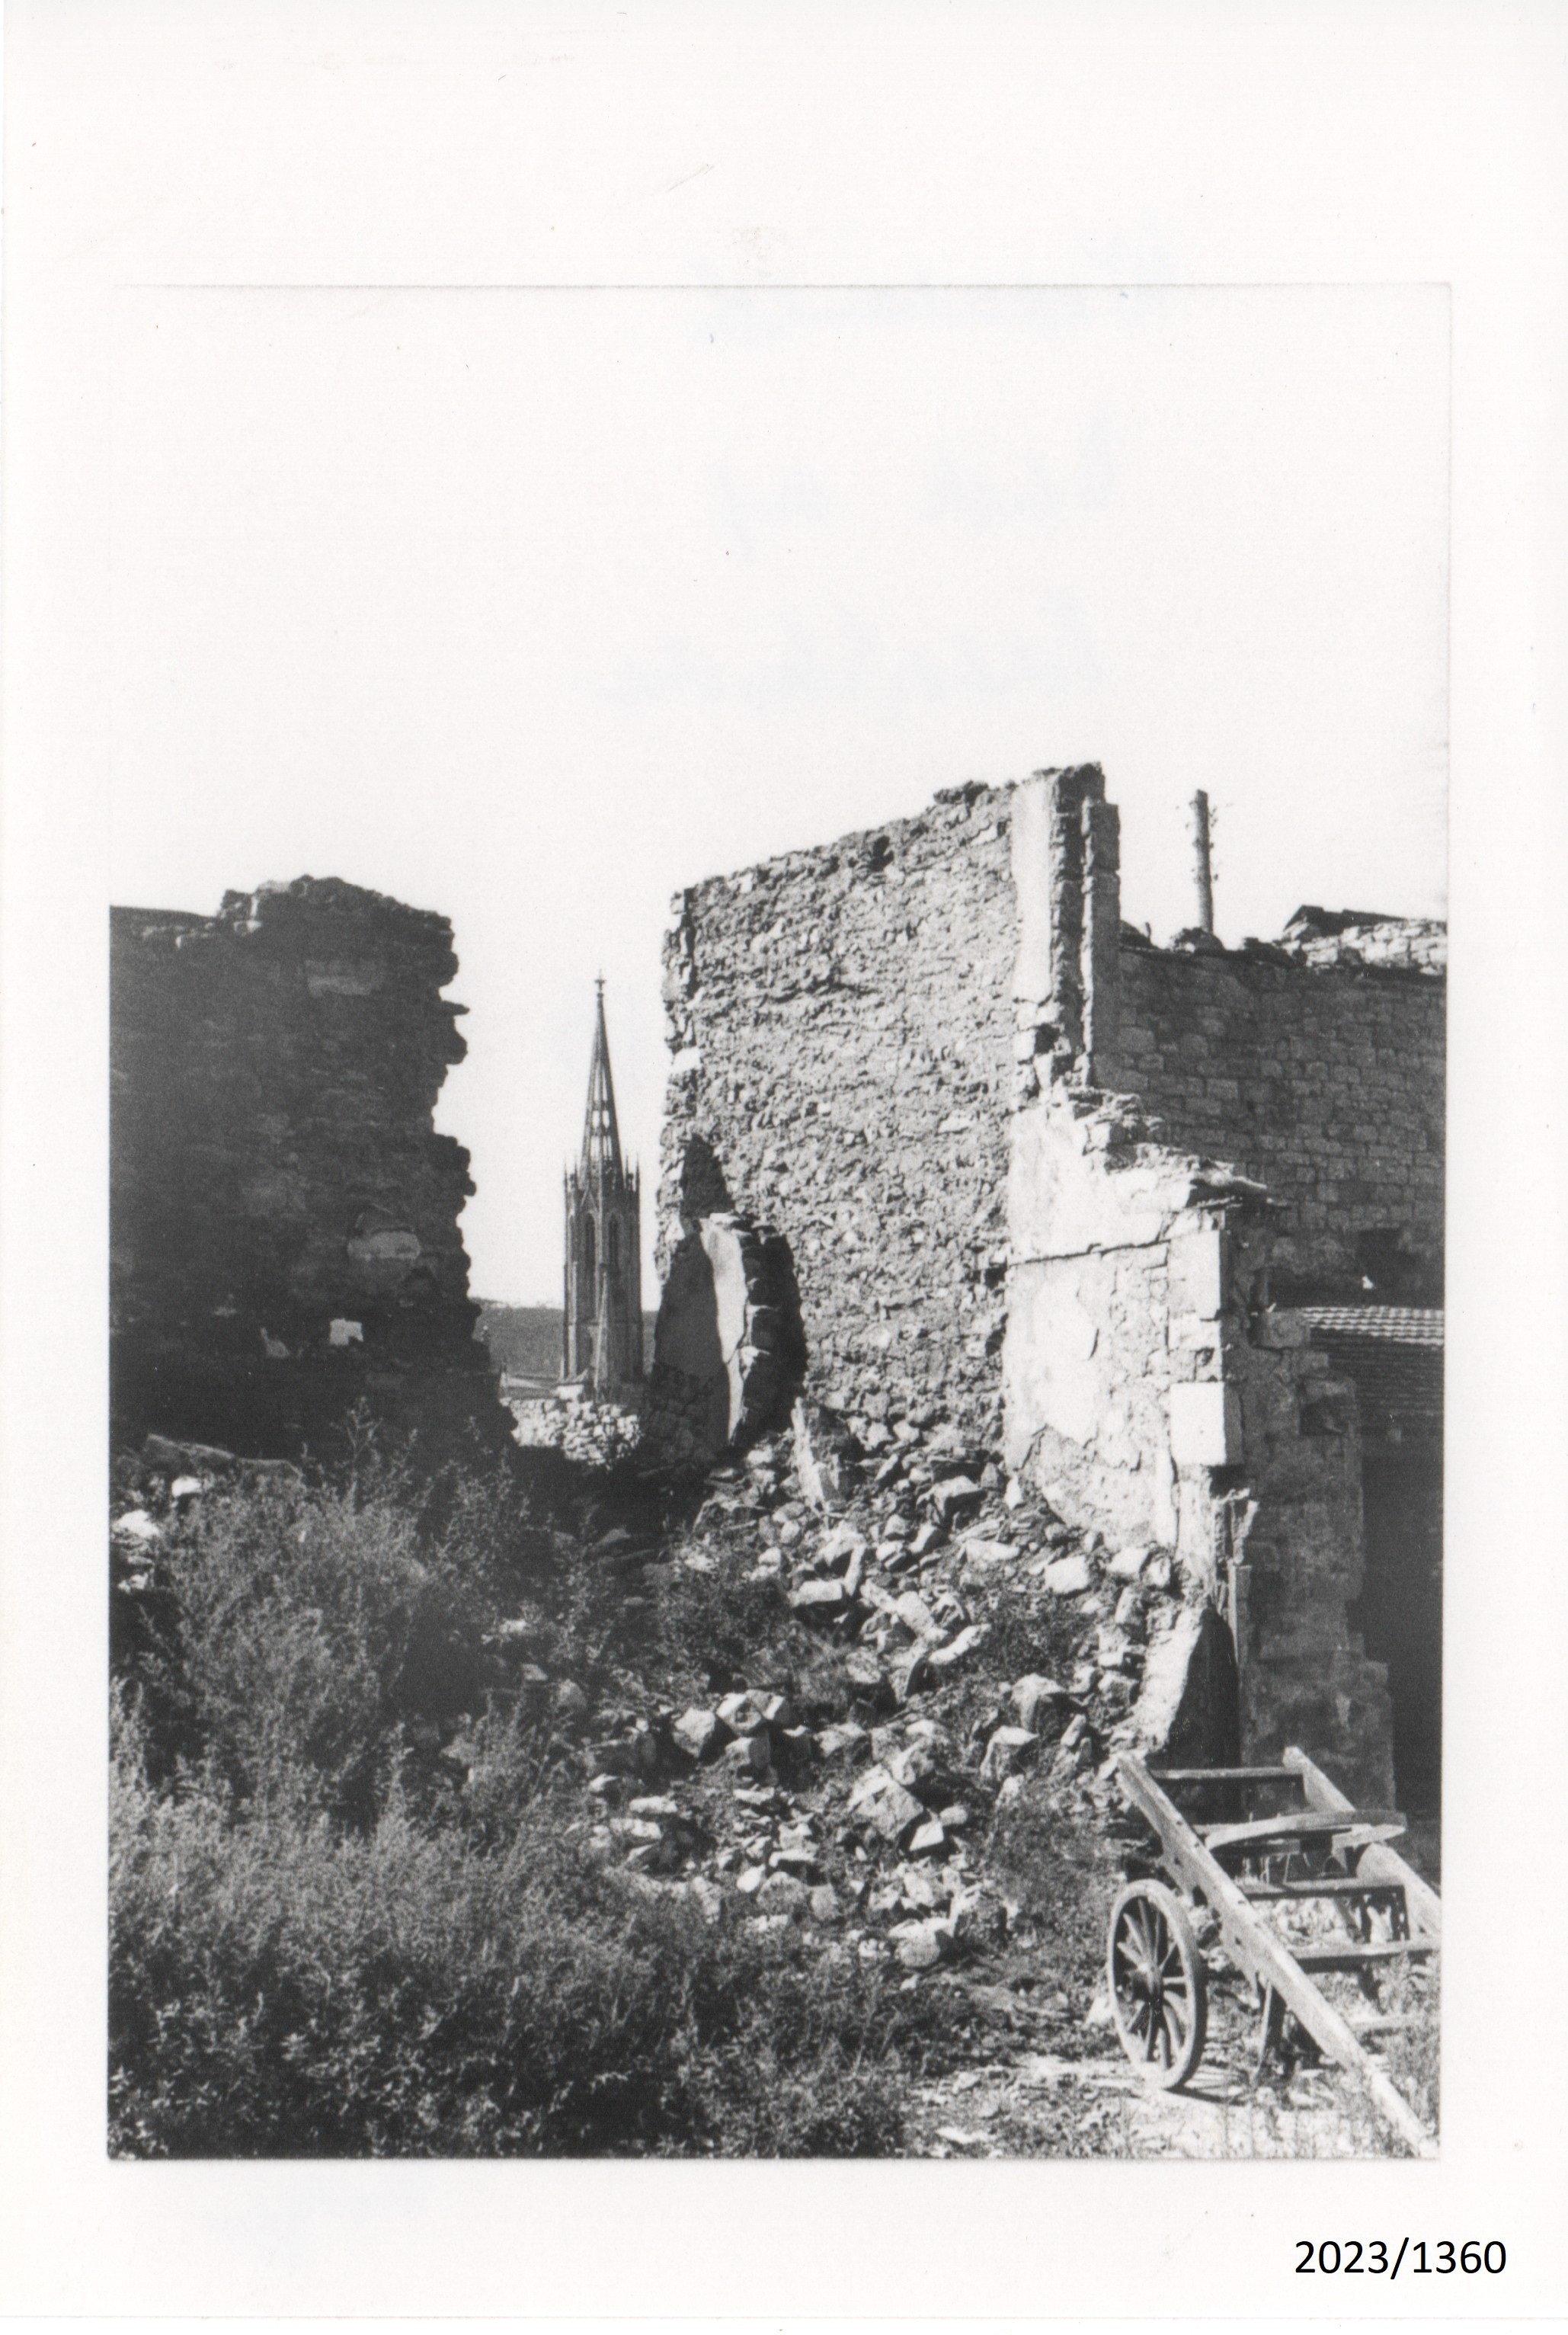 Bad Dürkheim: Blick durch Ruine auf die Schlosskirche, März 1945 (Stadtmuseum Bad Dürkheim im Kulturzentrum Haus Catoir CC BY-NC-SA)